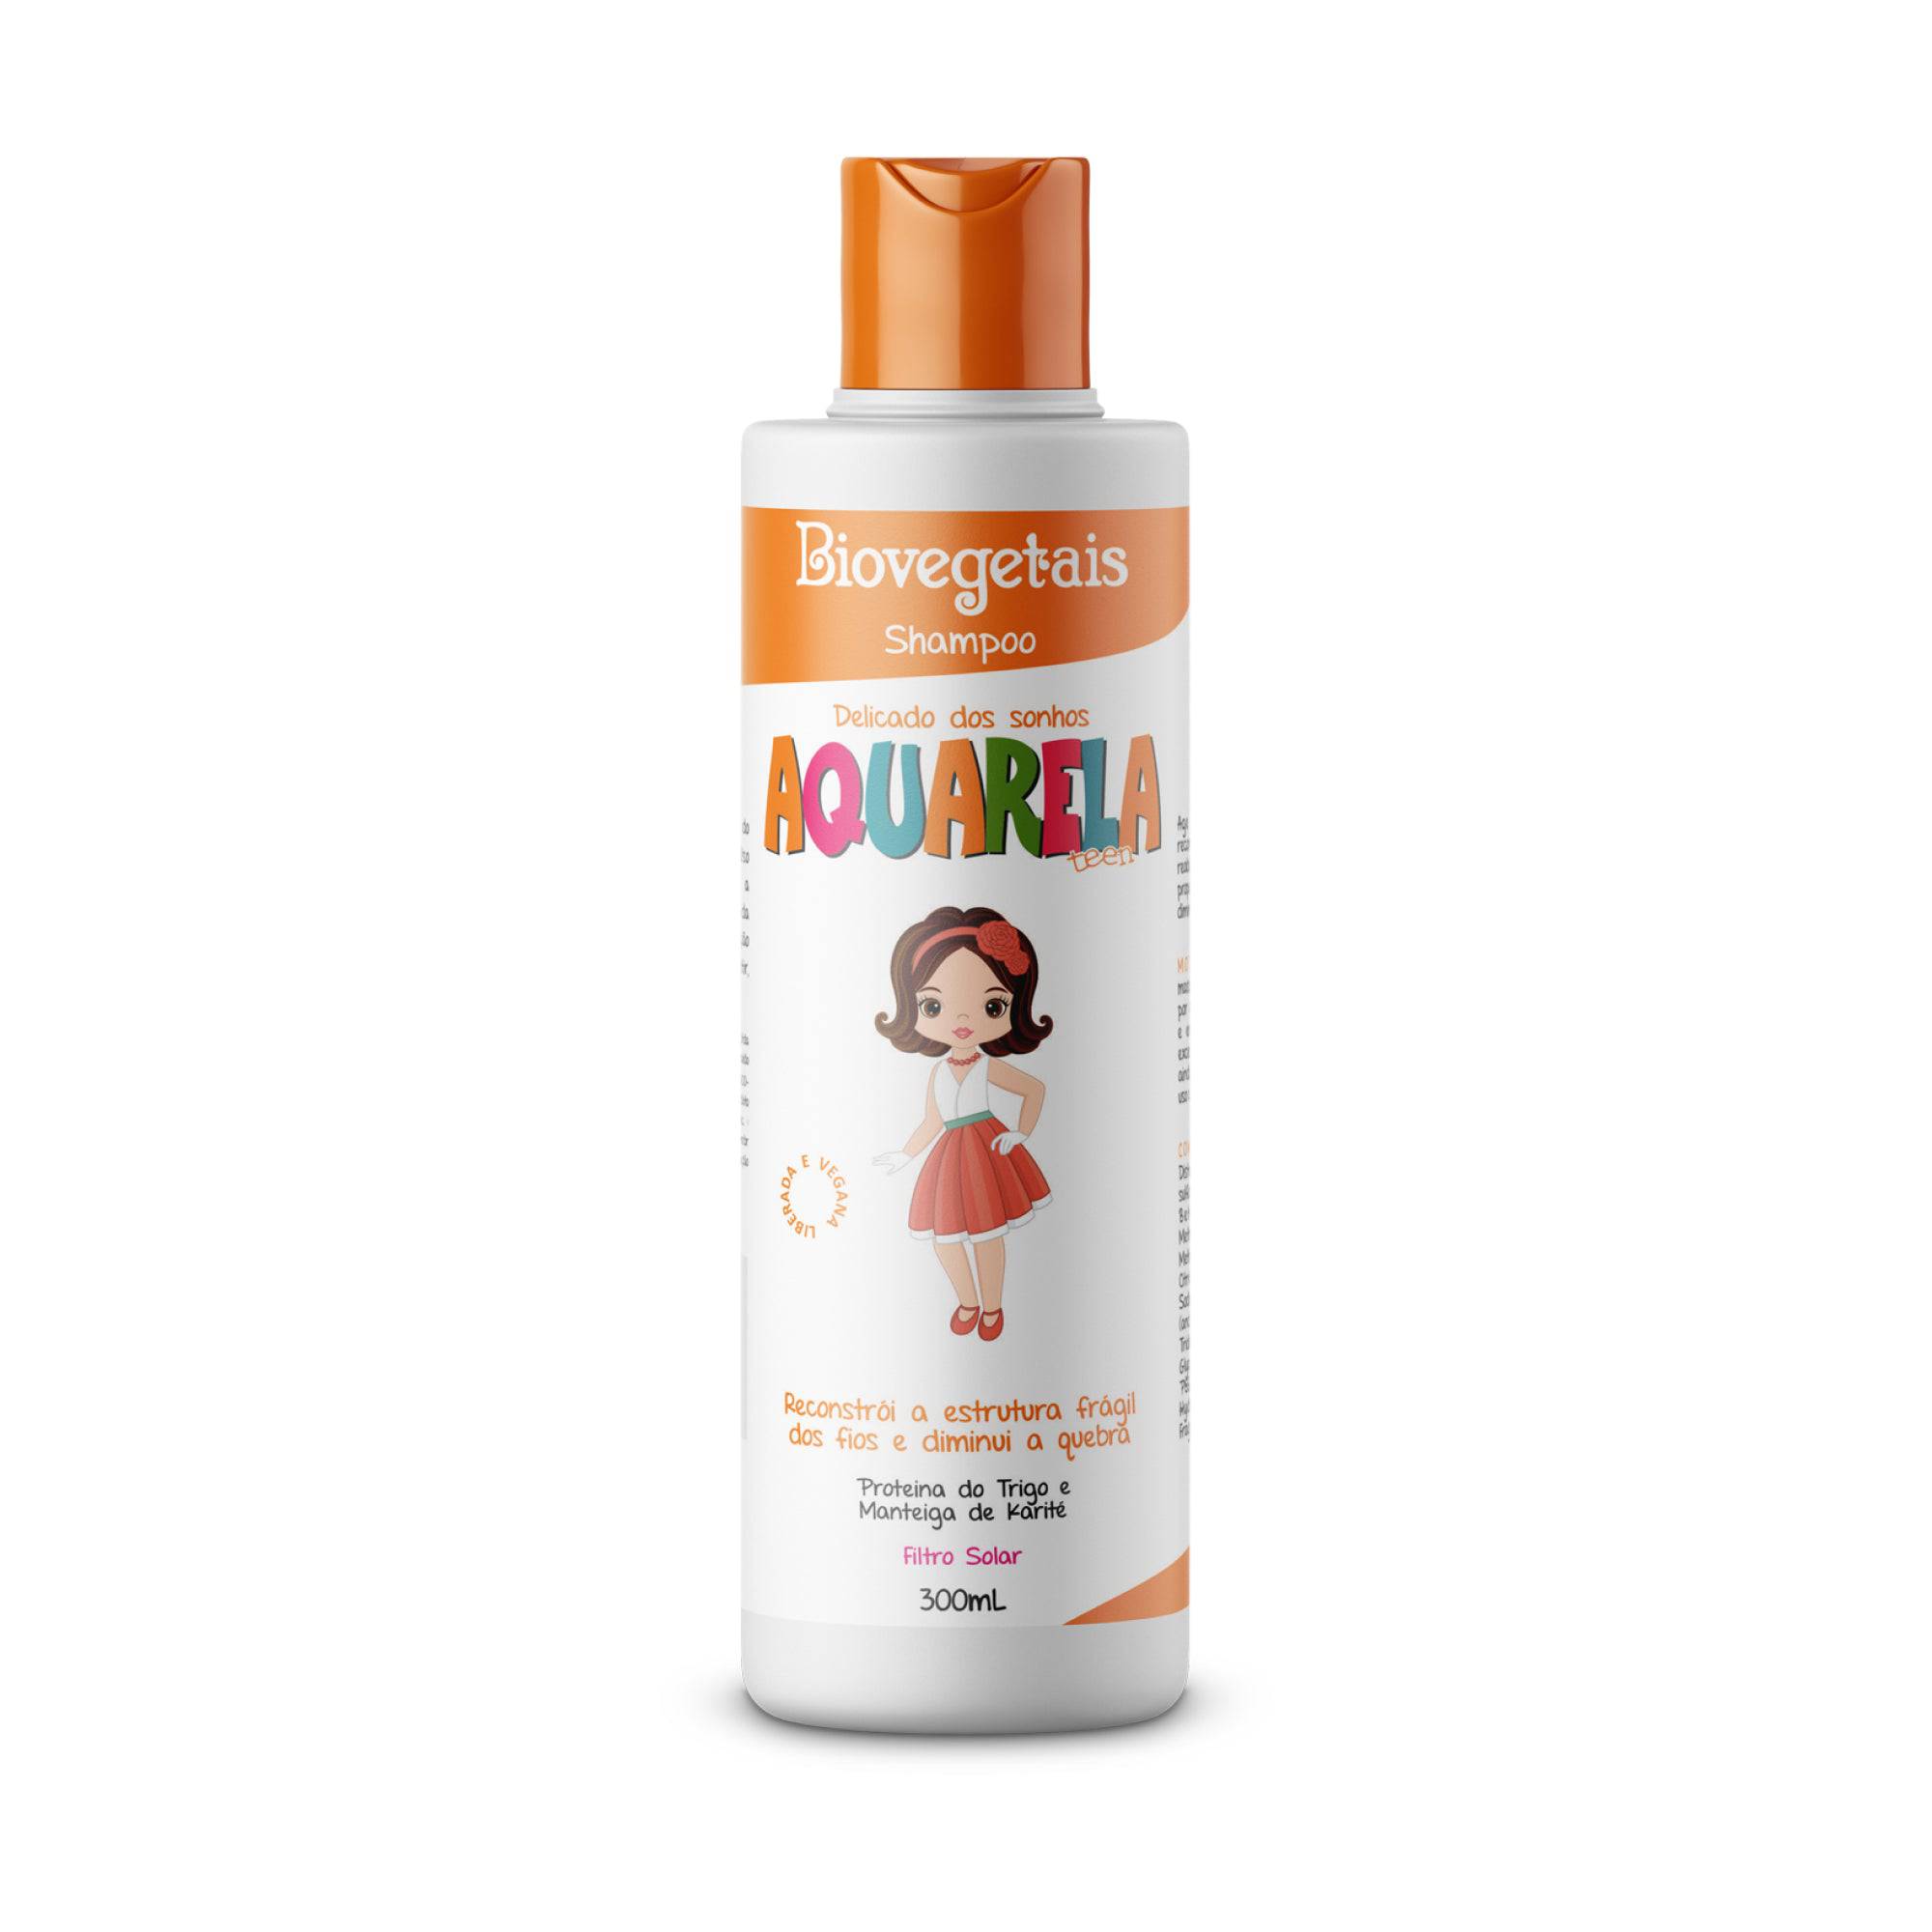 Shampoo Aquarela Teen Delicado dos Sonhos Biovegetais - 300ml - Trihair Cosméticos